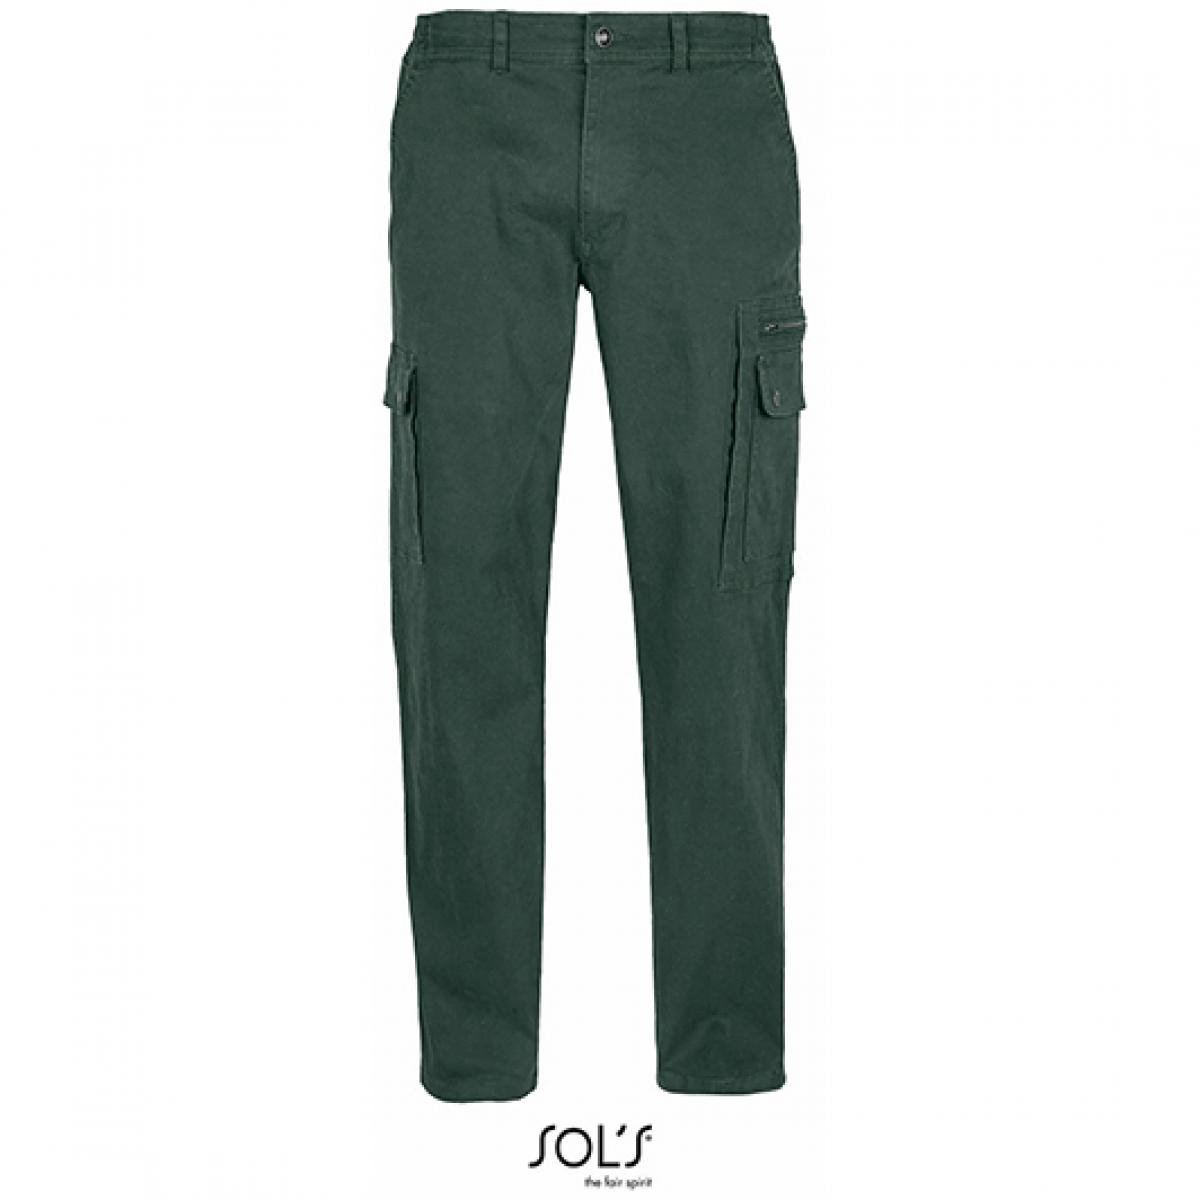 Hersteller: SOLs Herstellernummer: 03820 Artikelbezeichnung: Men´s Docker Pants - Herren Arbeitshose Farbe: Forest Green